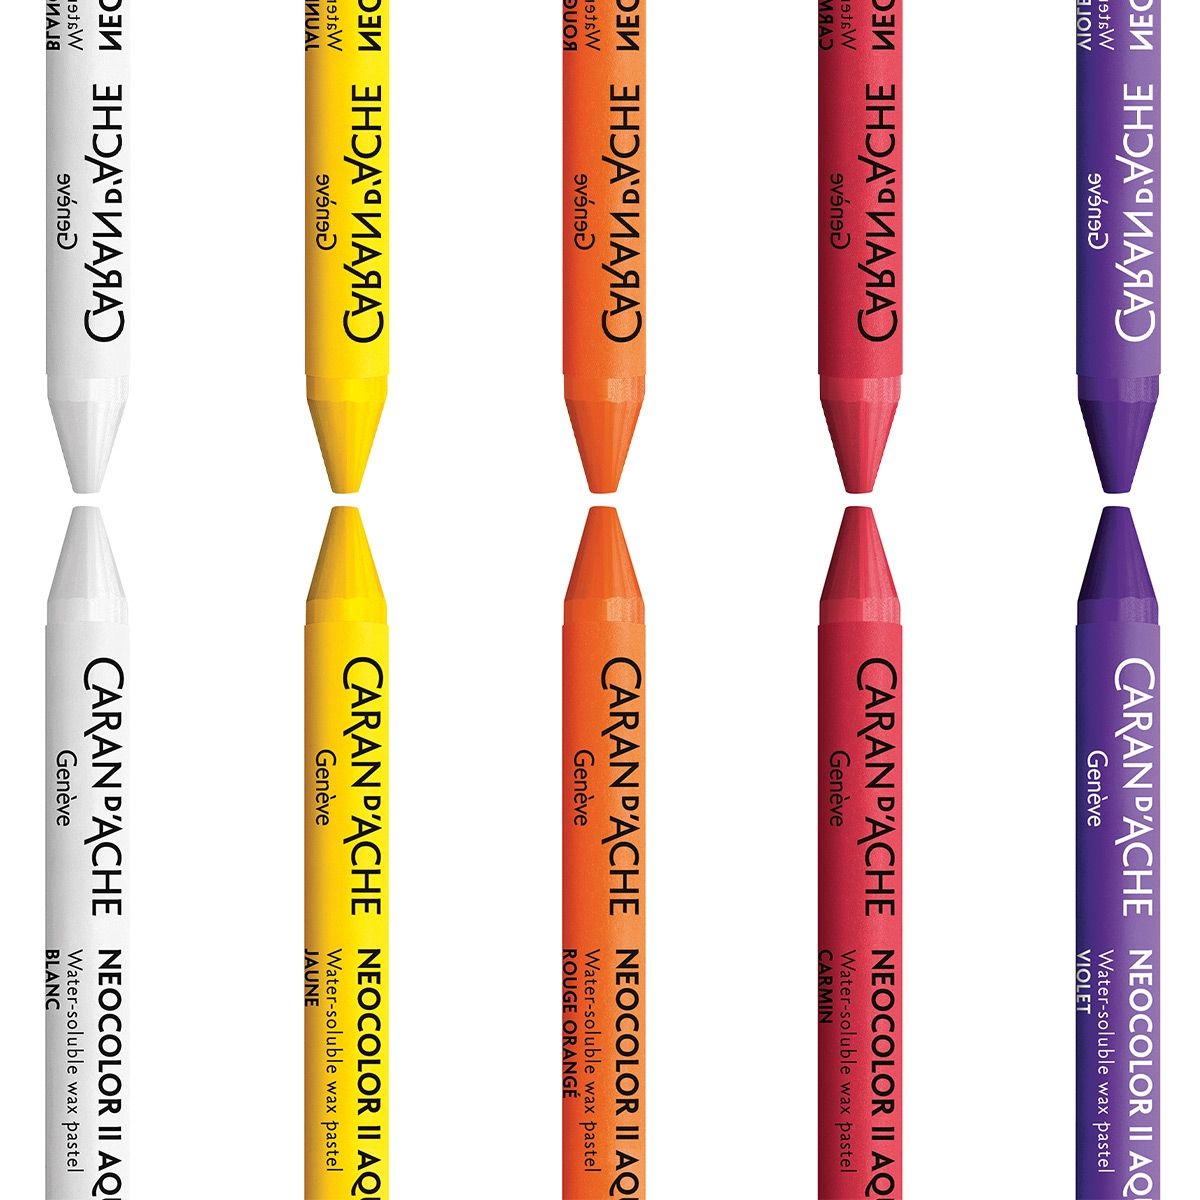 Caran D'Ache : Classic Neocolor I : Pink - Wax Crayons